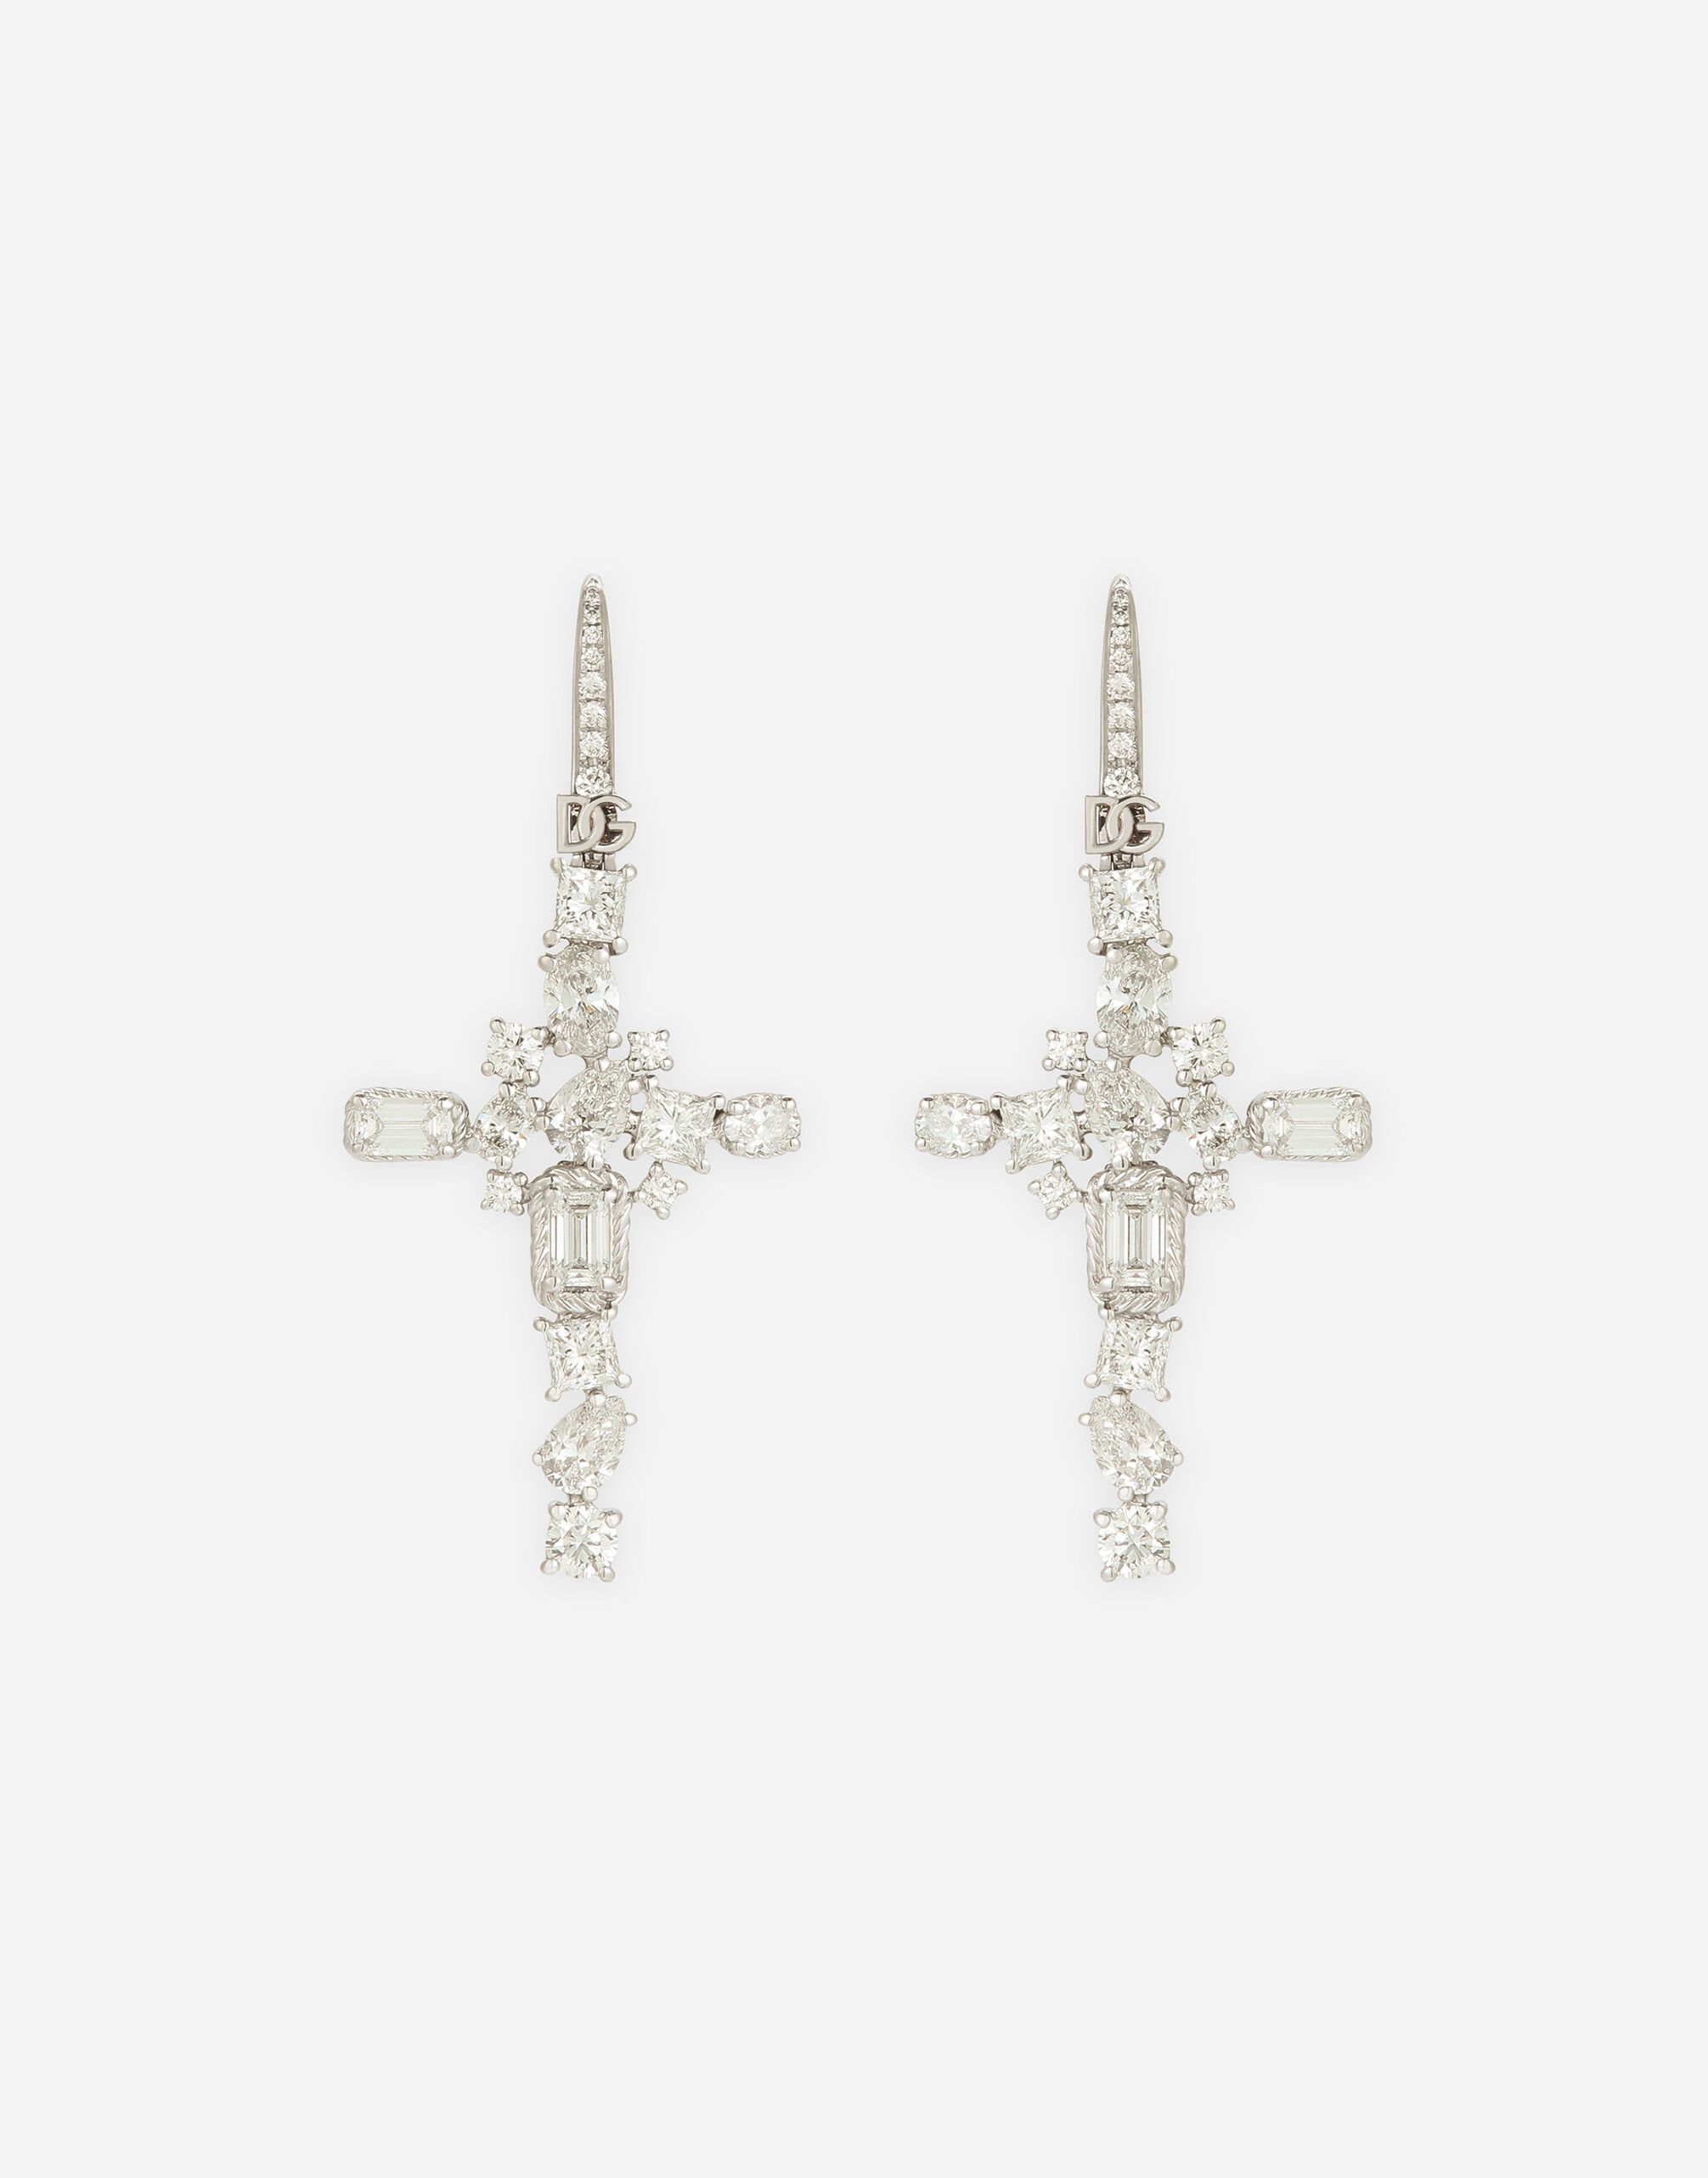 Dolce & Gabbana Easy Diamond earrings in white gold 18Kt diamonds Gold WERA2GWPE01